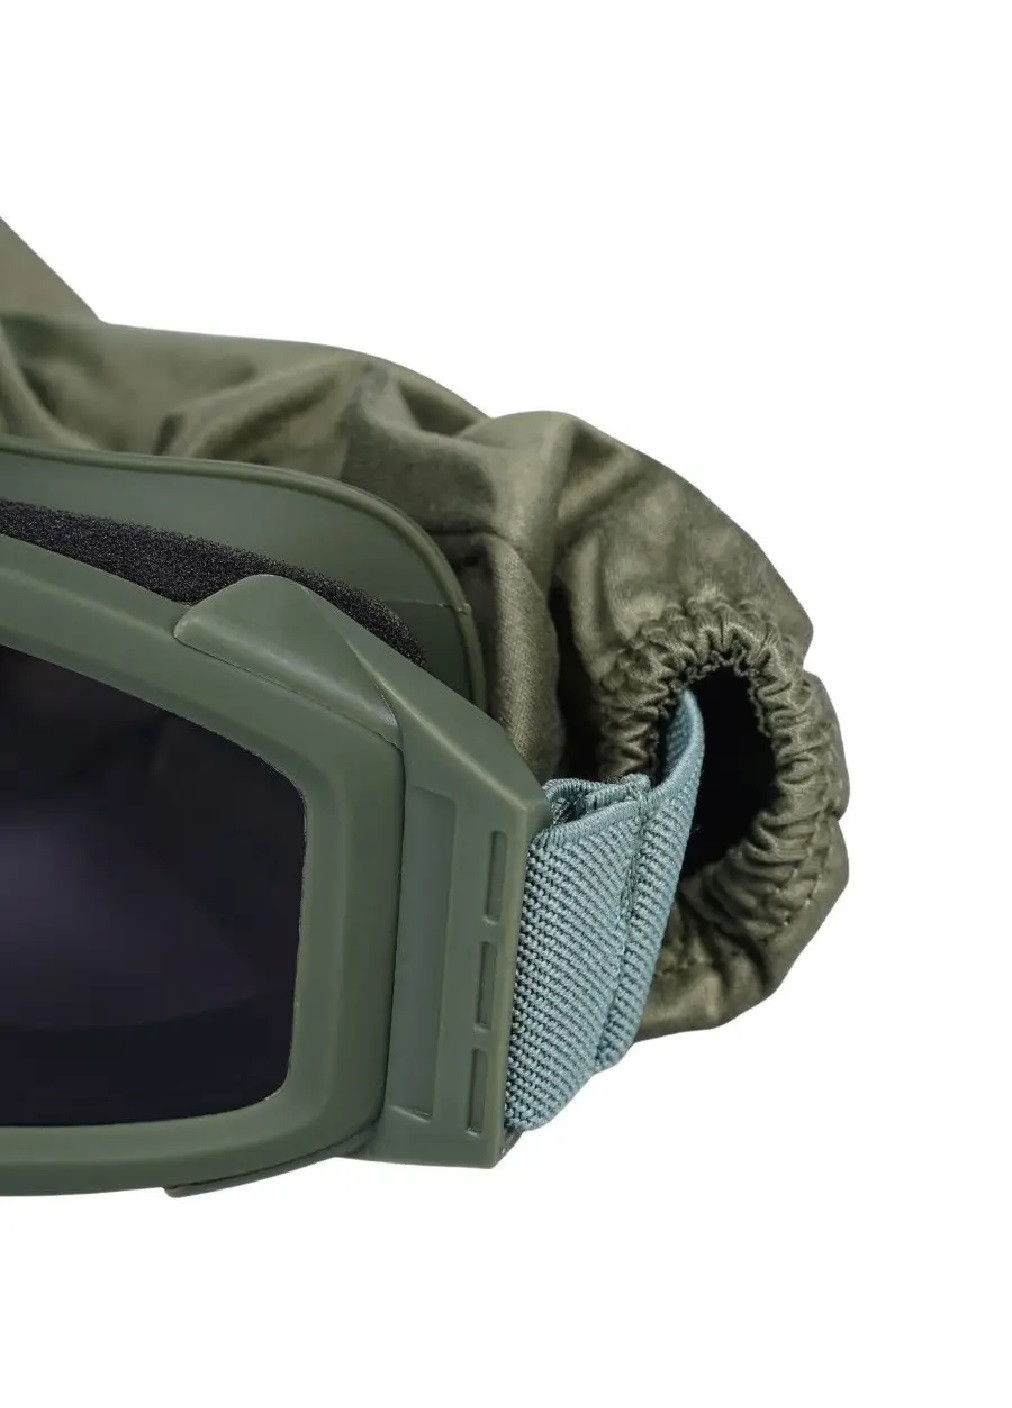 Тактическая защитная маска очки со сменными линзами 3 цвета чехлом для хранения 20х7.9х2.5 см (476043-Prob) Unbranded (275926488)